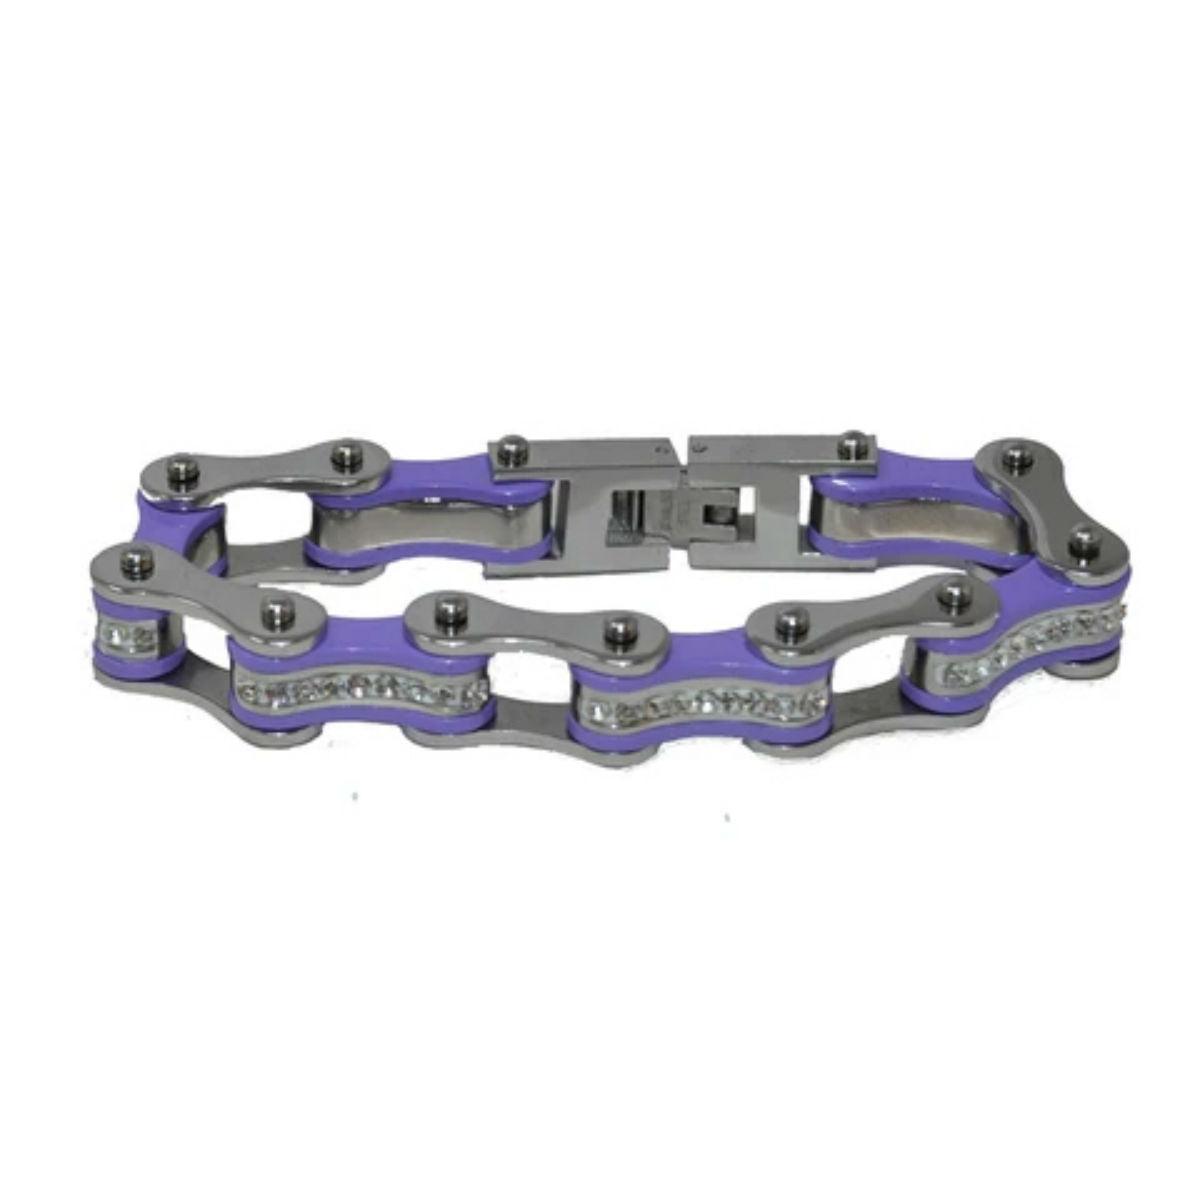 Daniel Smart Women's 316L Stainless Steel Bike Chain Bracelet w/ White Crystal Centers, Silver/Purple - American Legend Rider